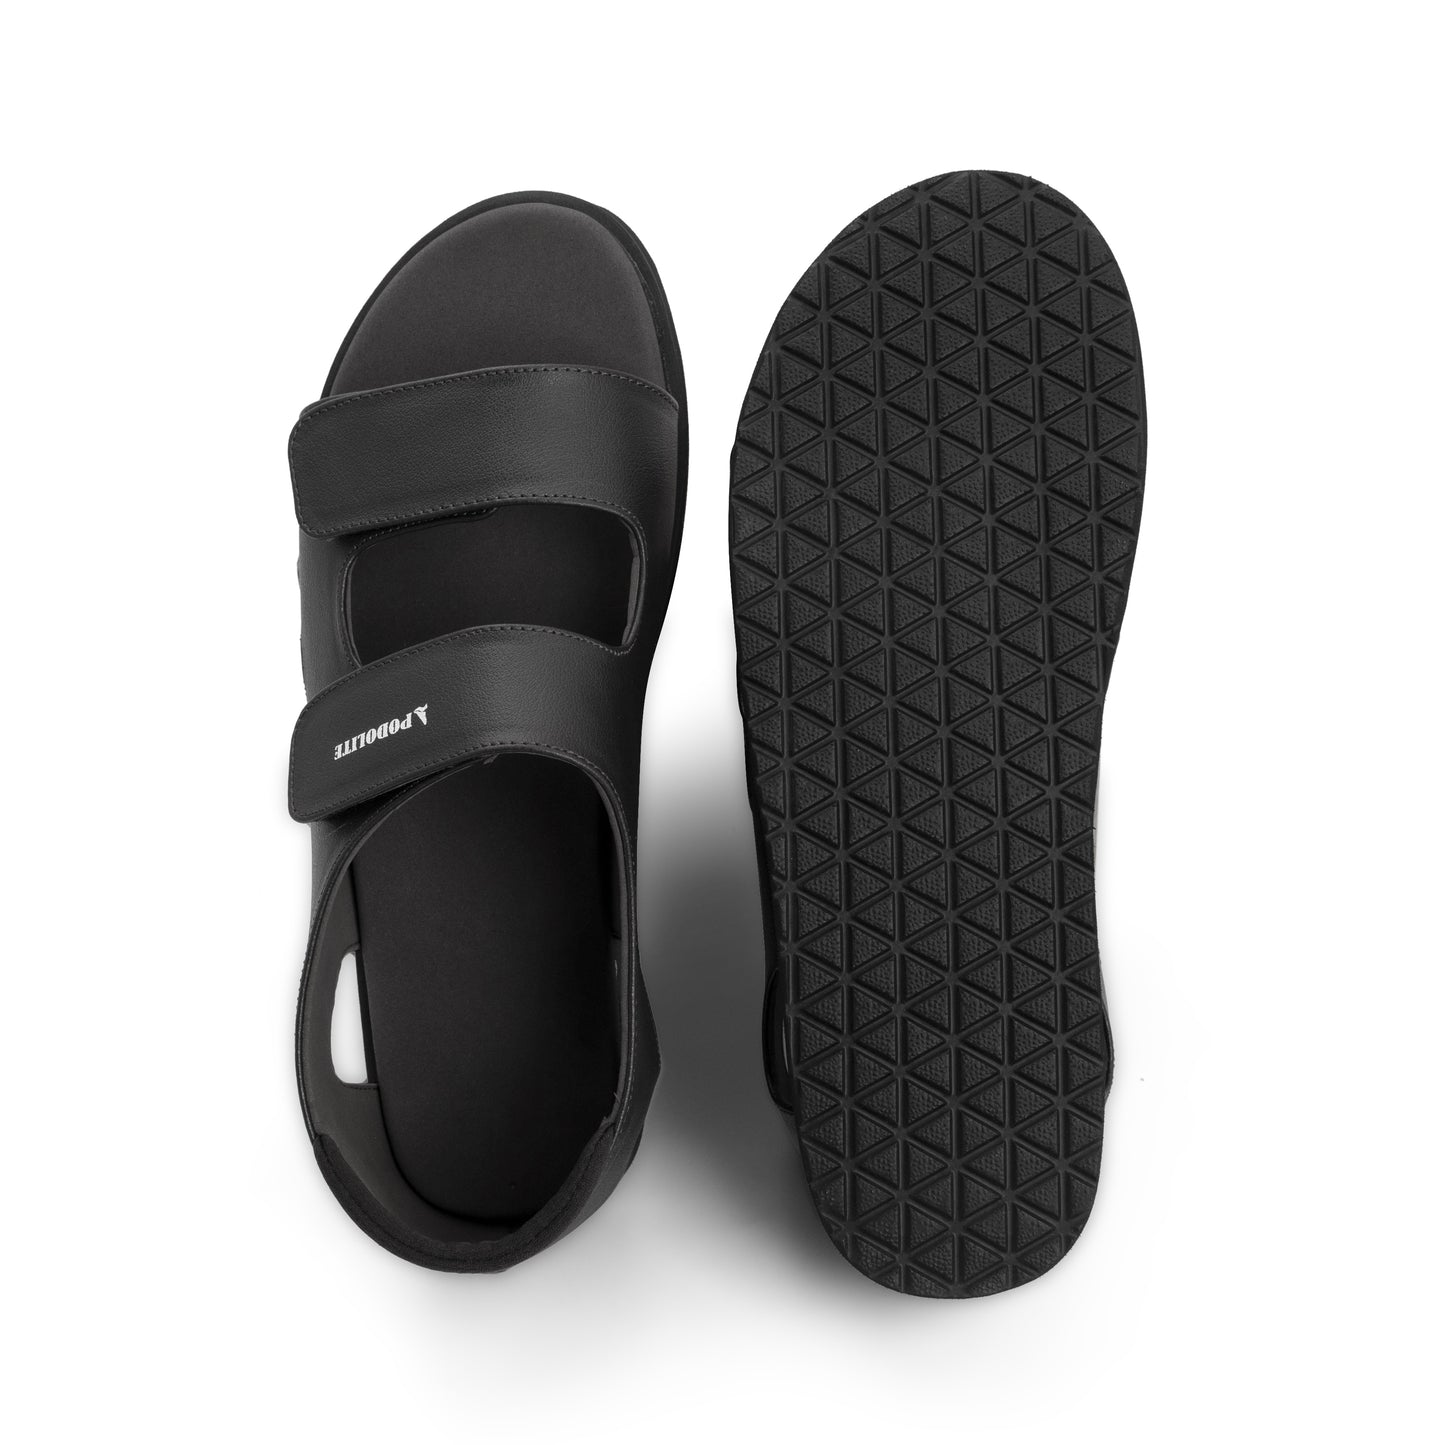 Podolite Adjustable Orthopedic Sandals (Men)